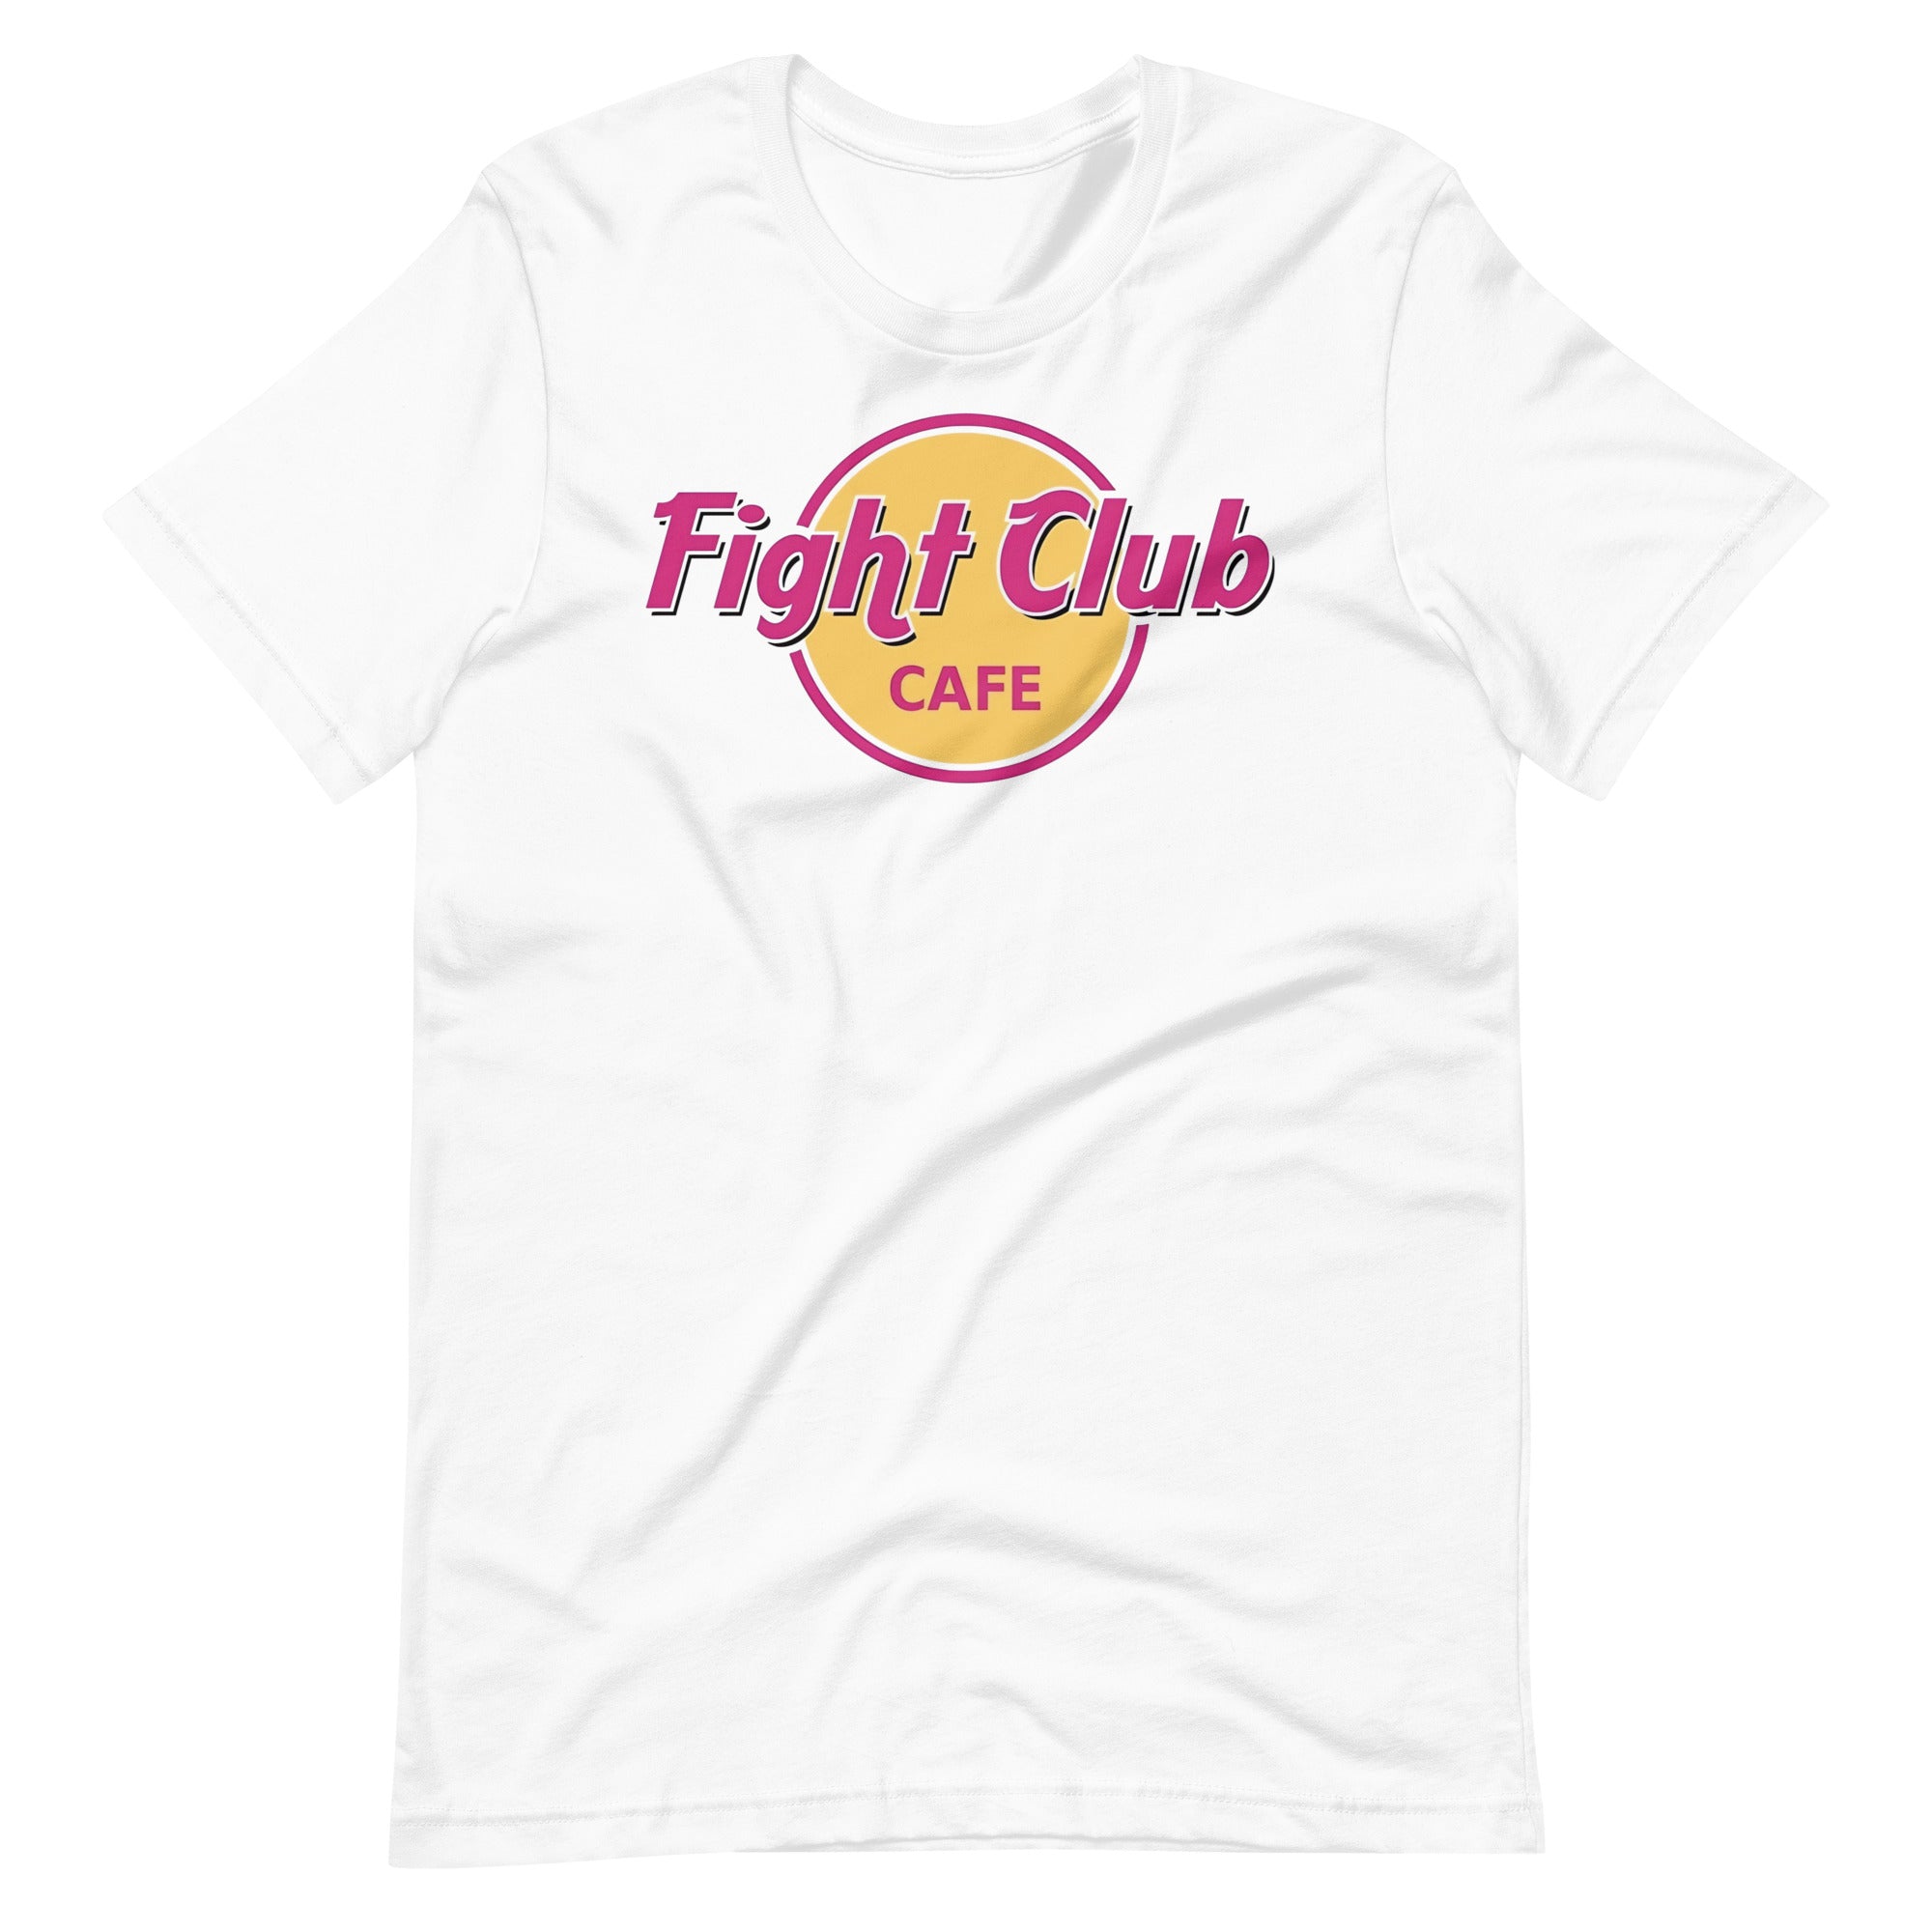 Camiseta Fight Club Café, Disponible en la mejor tienda online para comprar tu merch favorita, la mejor Calidad, compra Ahora en Superstar! 